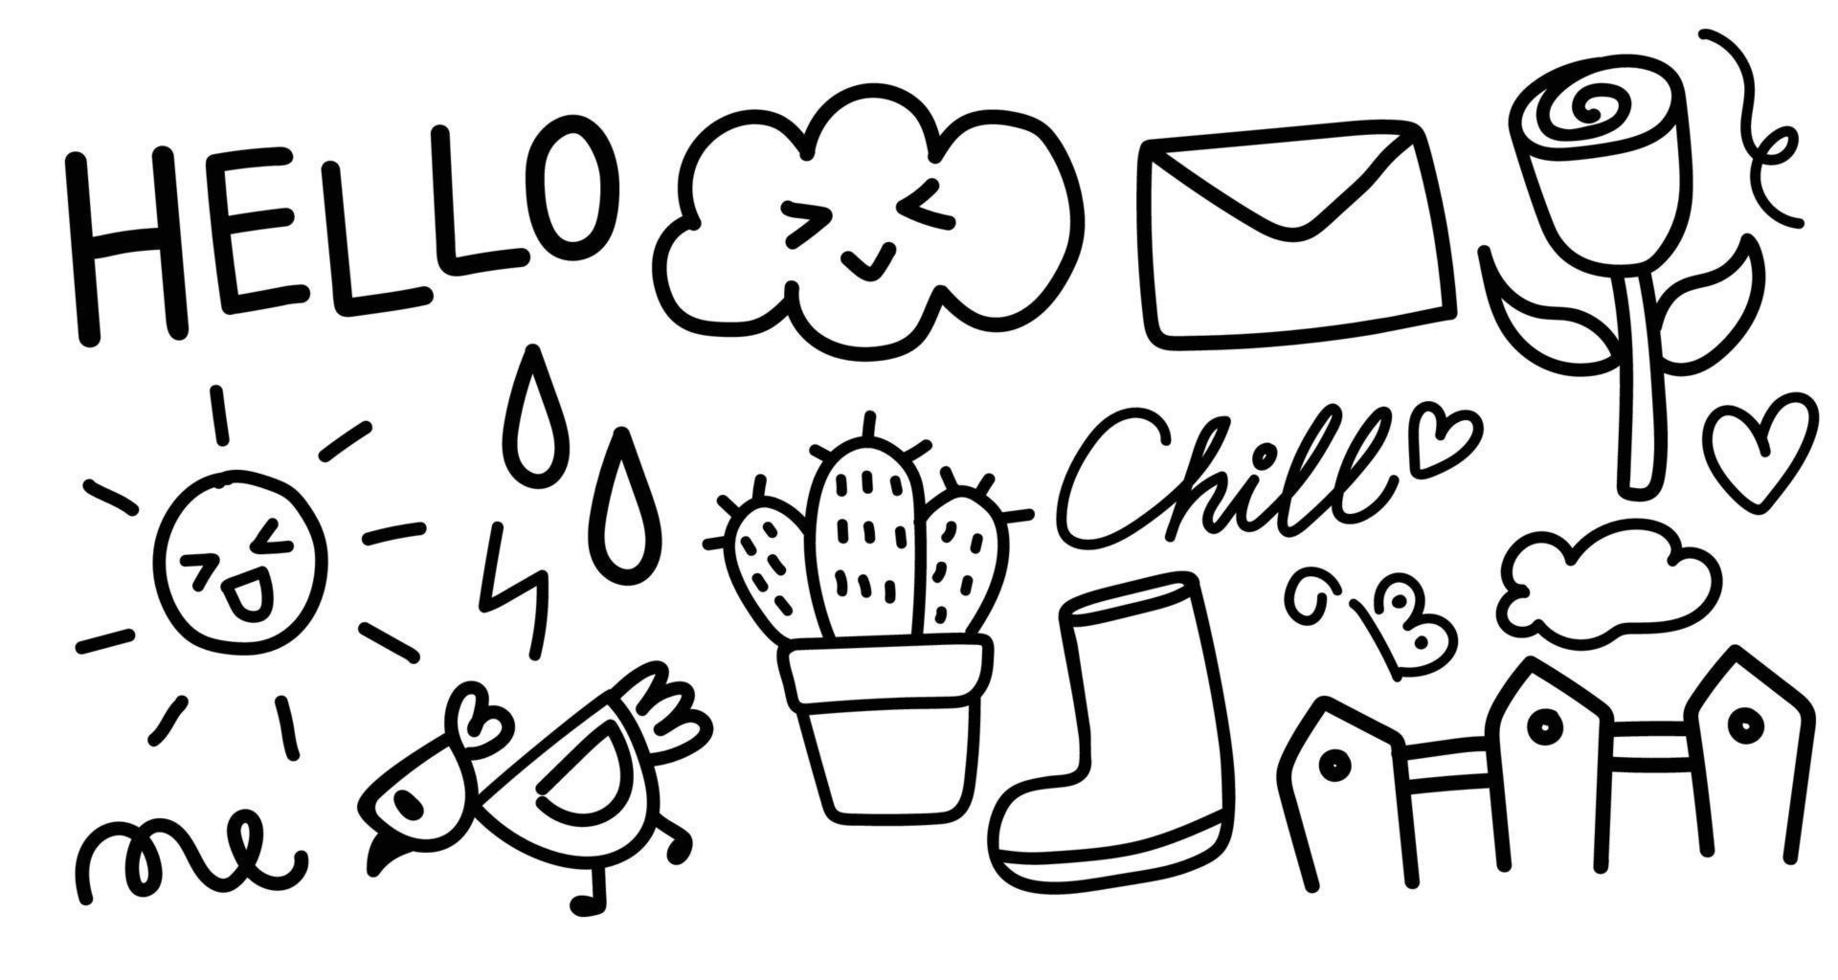 ensemble de doodle dessinés à la main. éléments d'étoile, cactus, nuage, soleil, mot, poulet, etc. illustration vectorielle vecteur